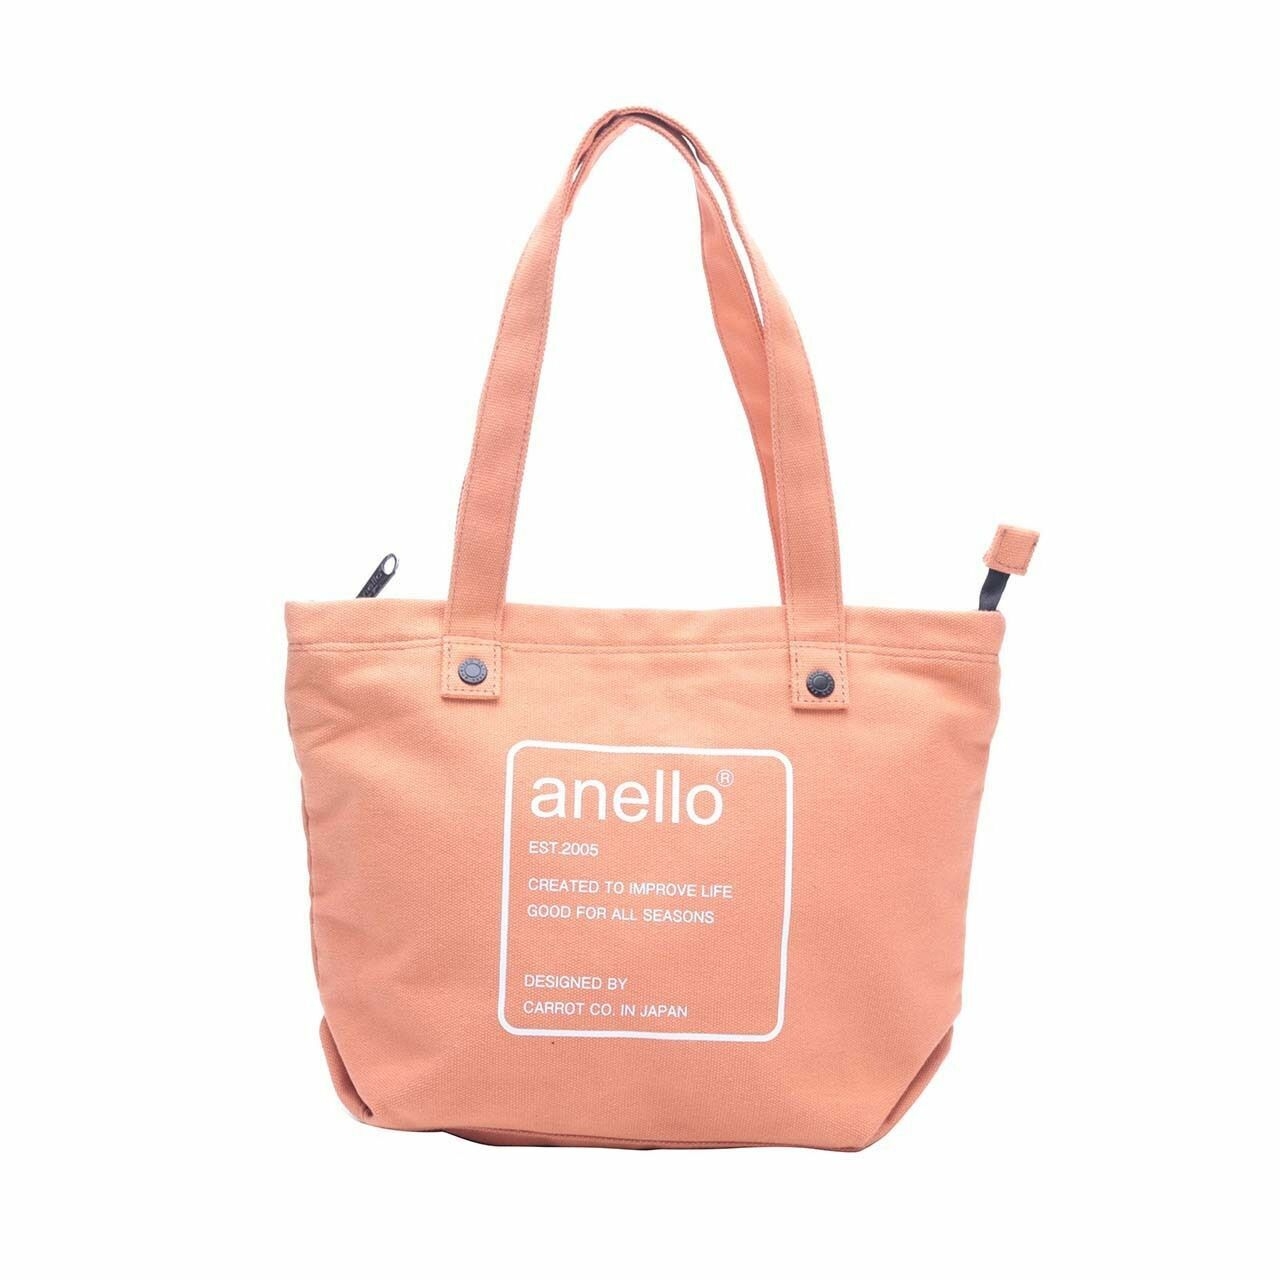 Anello Orange Canvas Tote Bag